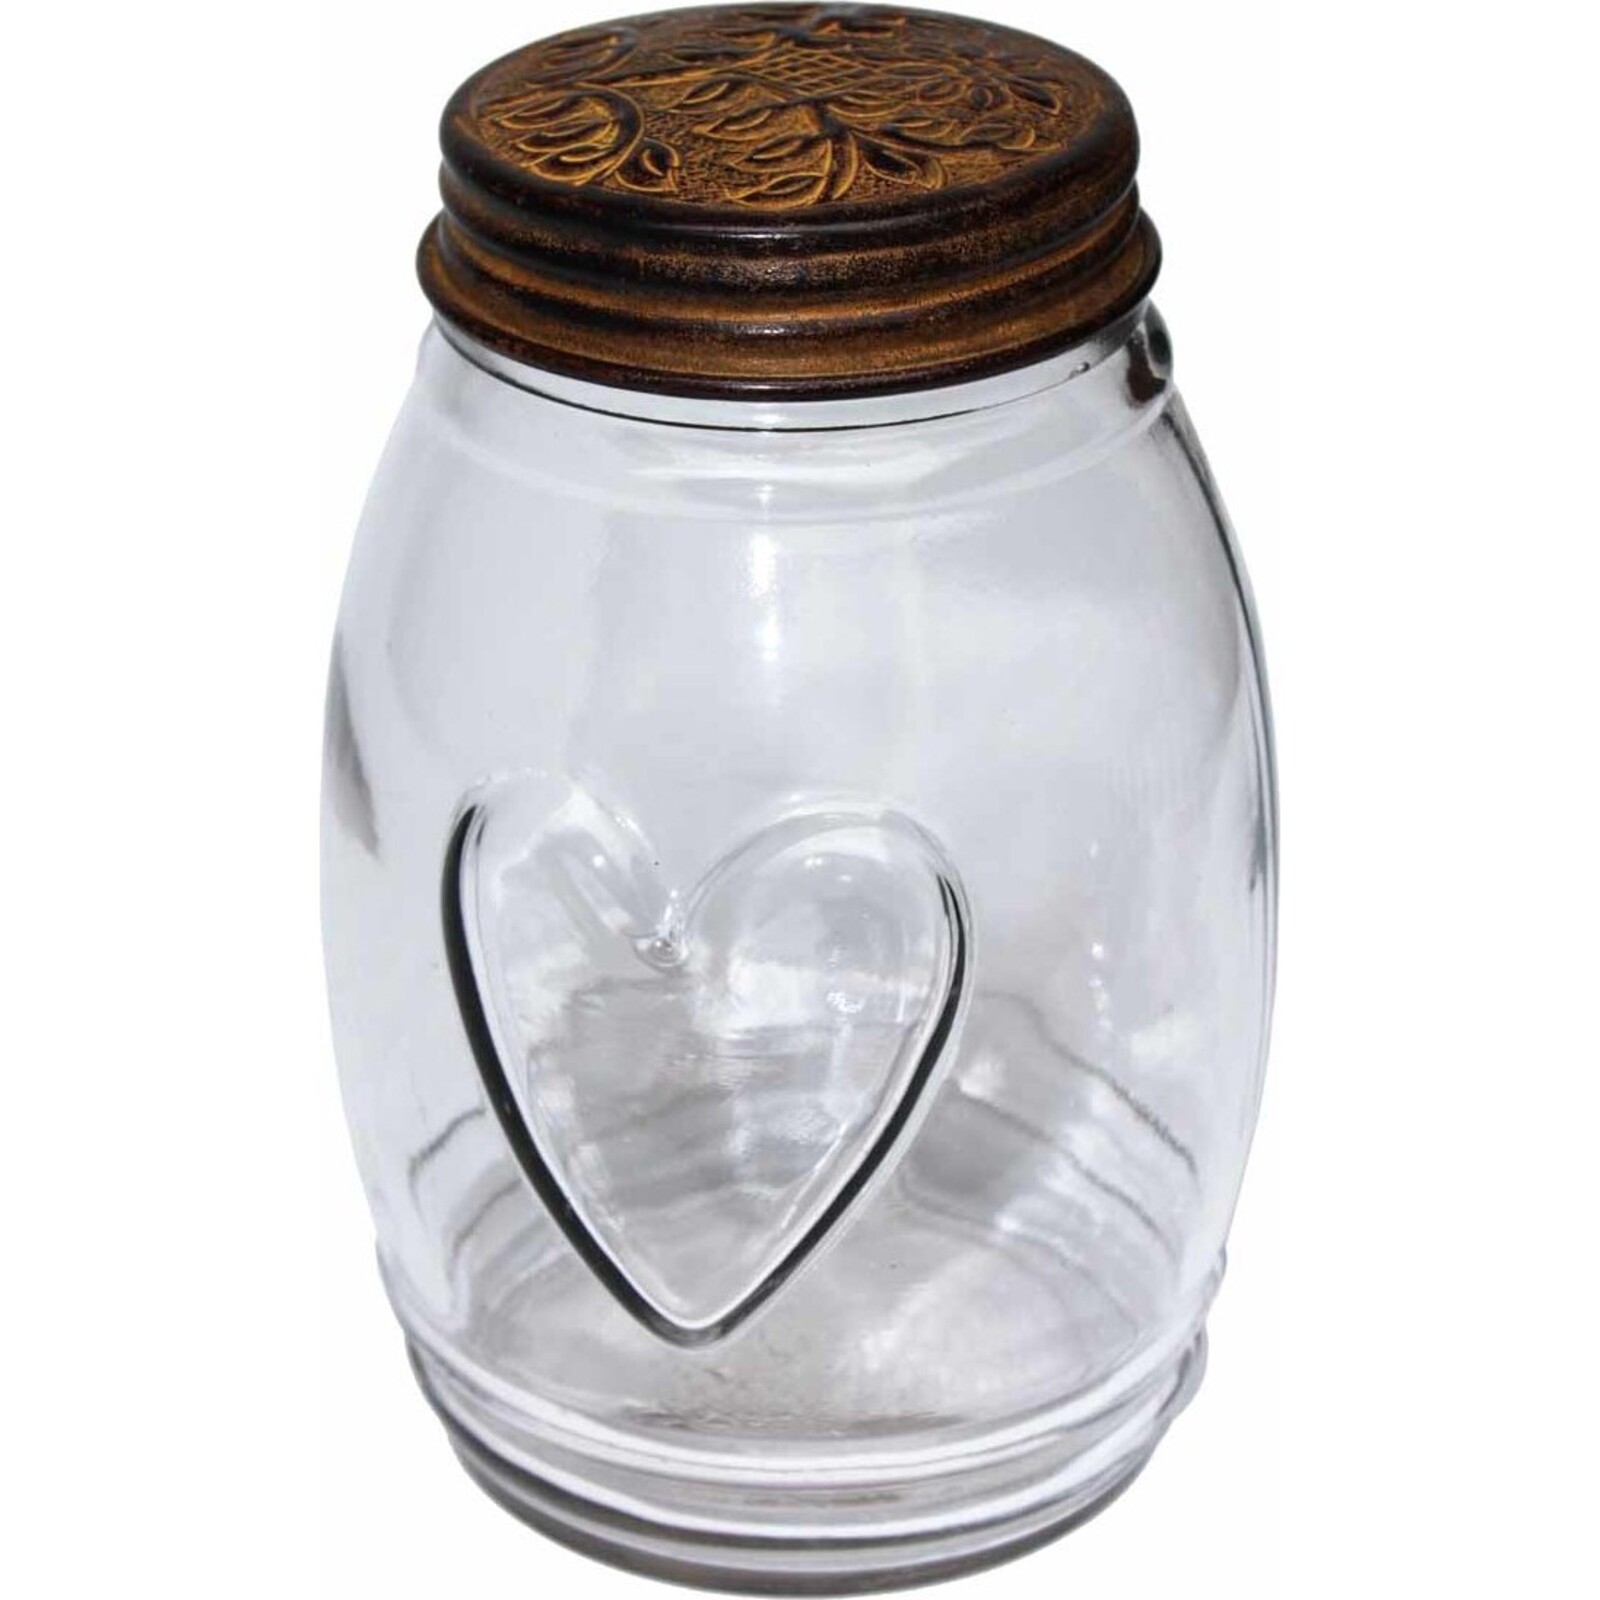 Glass Jar - Chetai Round